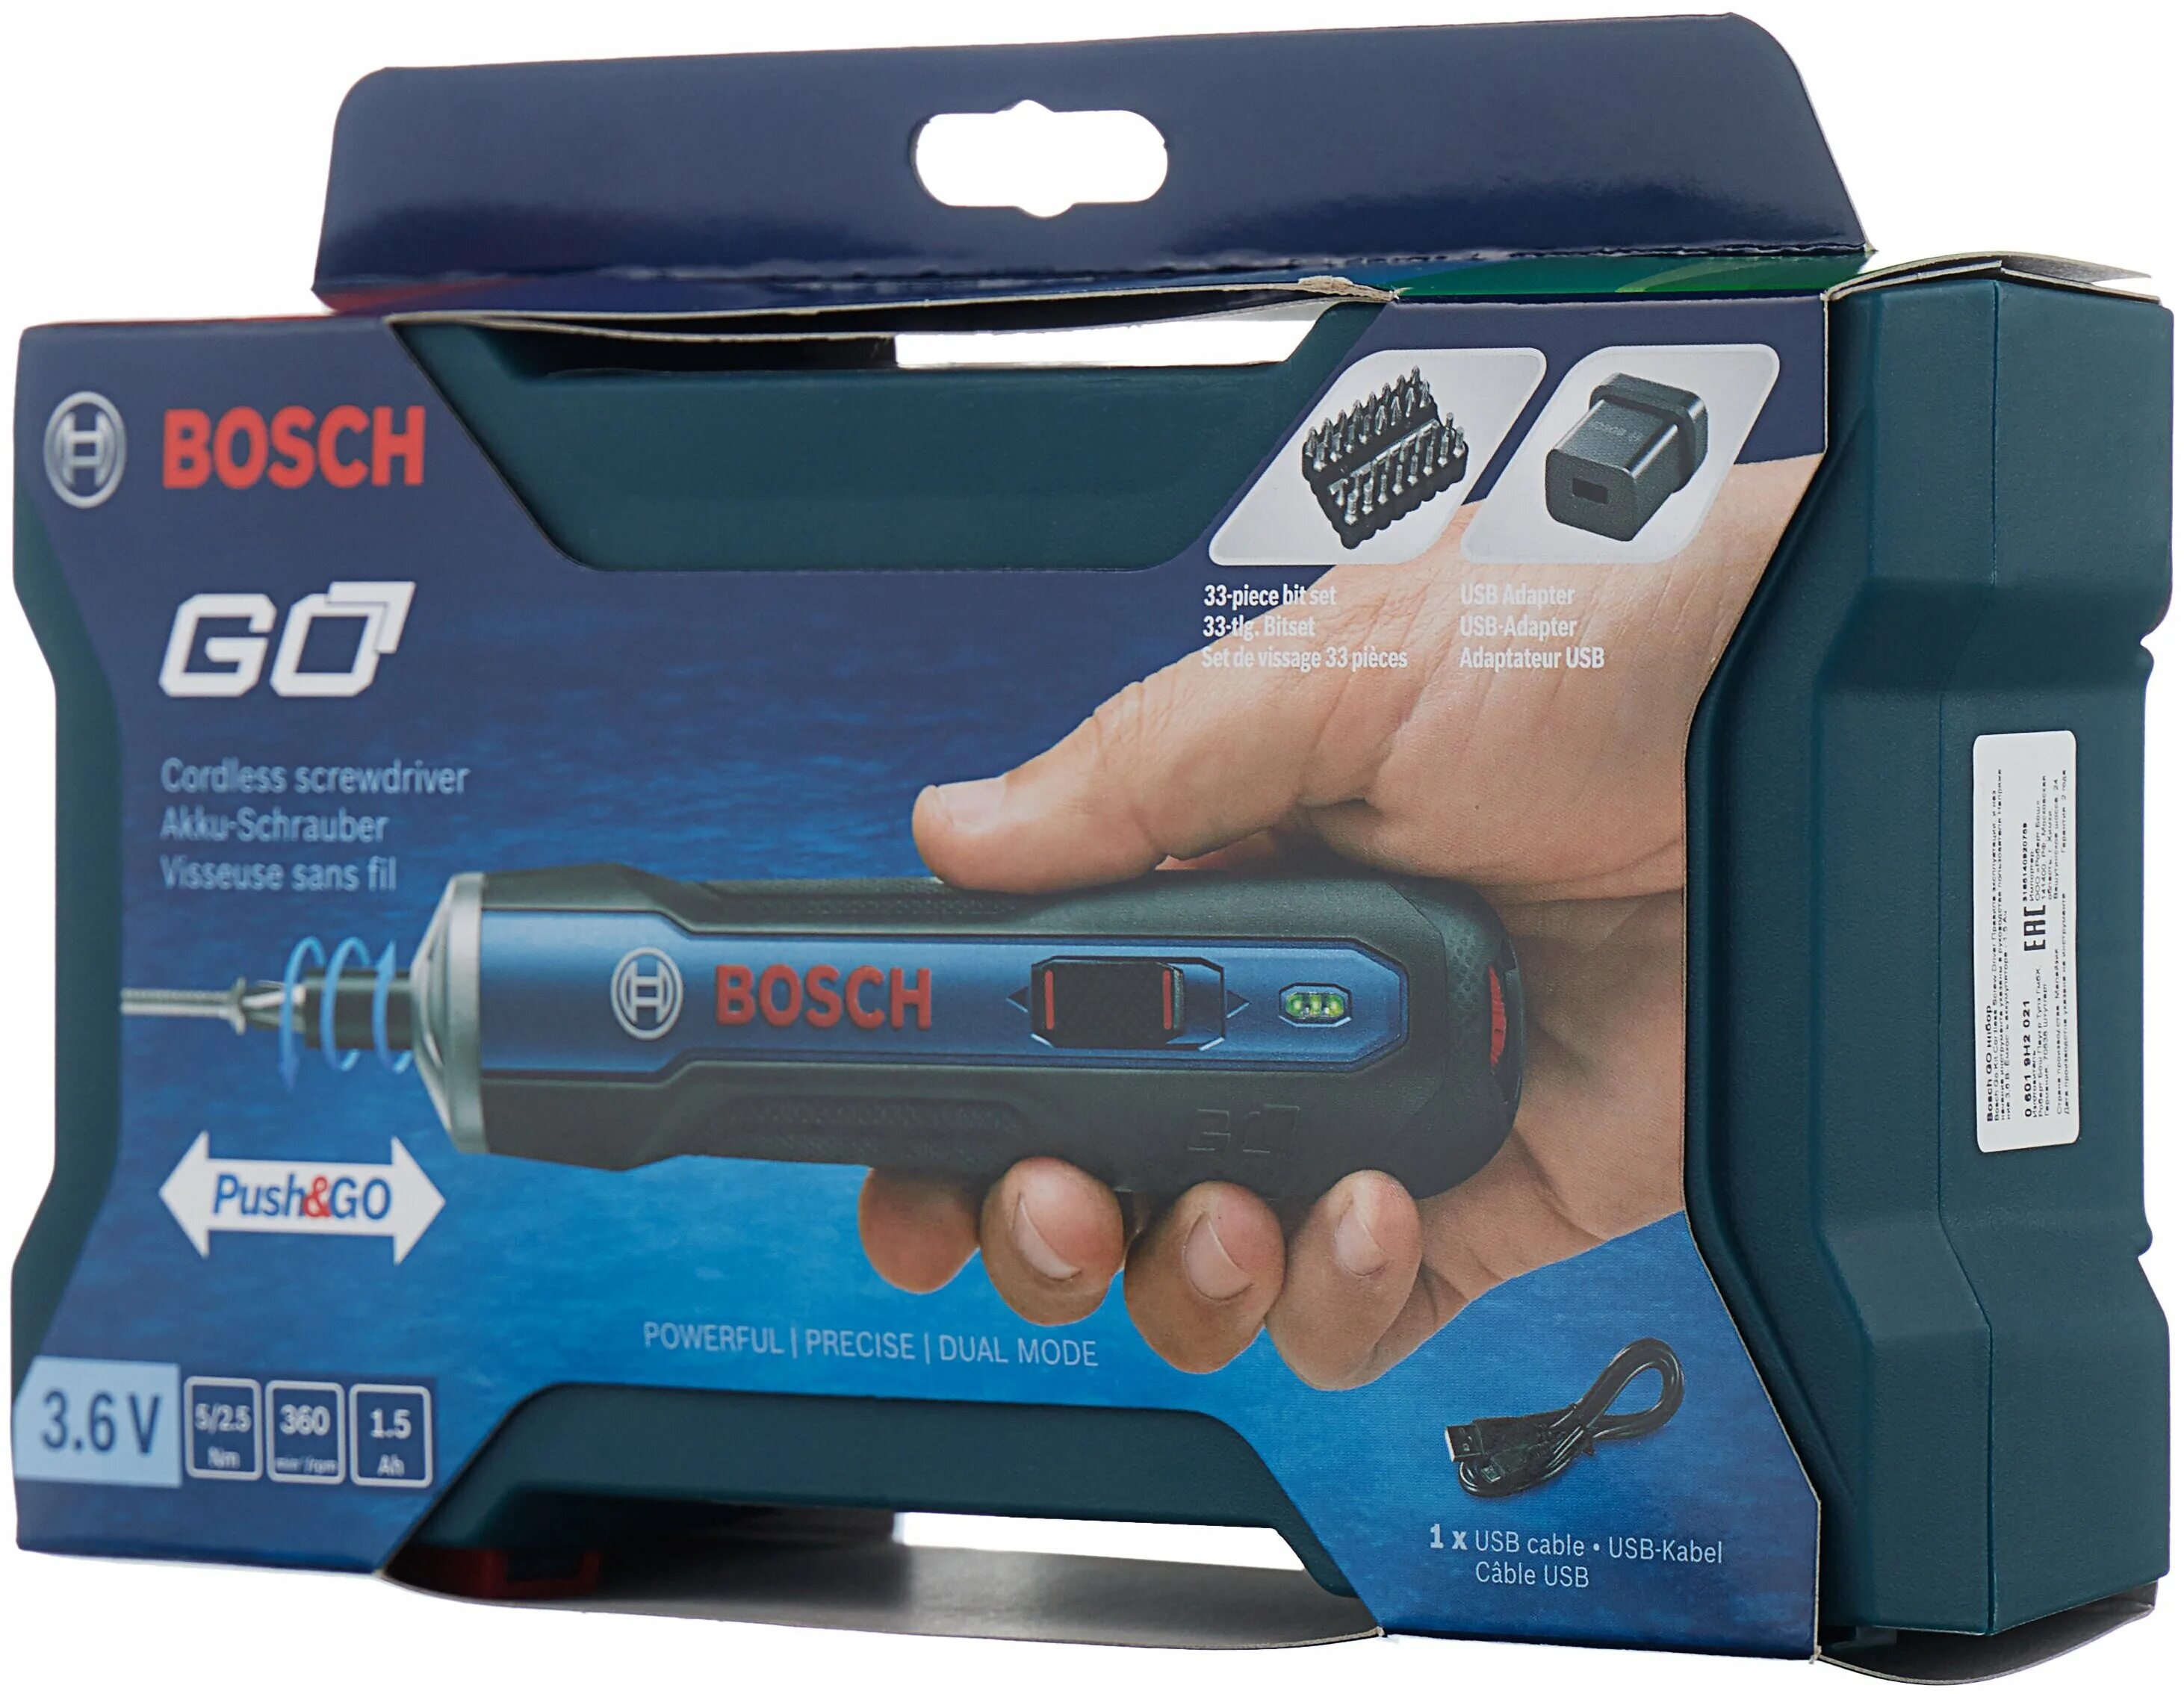 Купить отвертку bosch. Отвертка аккумуляторная Bosch go Kit (06019h2021). Bosch go Kit 06019h2021. Электроотвертка Bosch go Kit. Bosch отвертка аккумуляторная Bosch go.